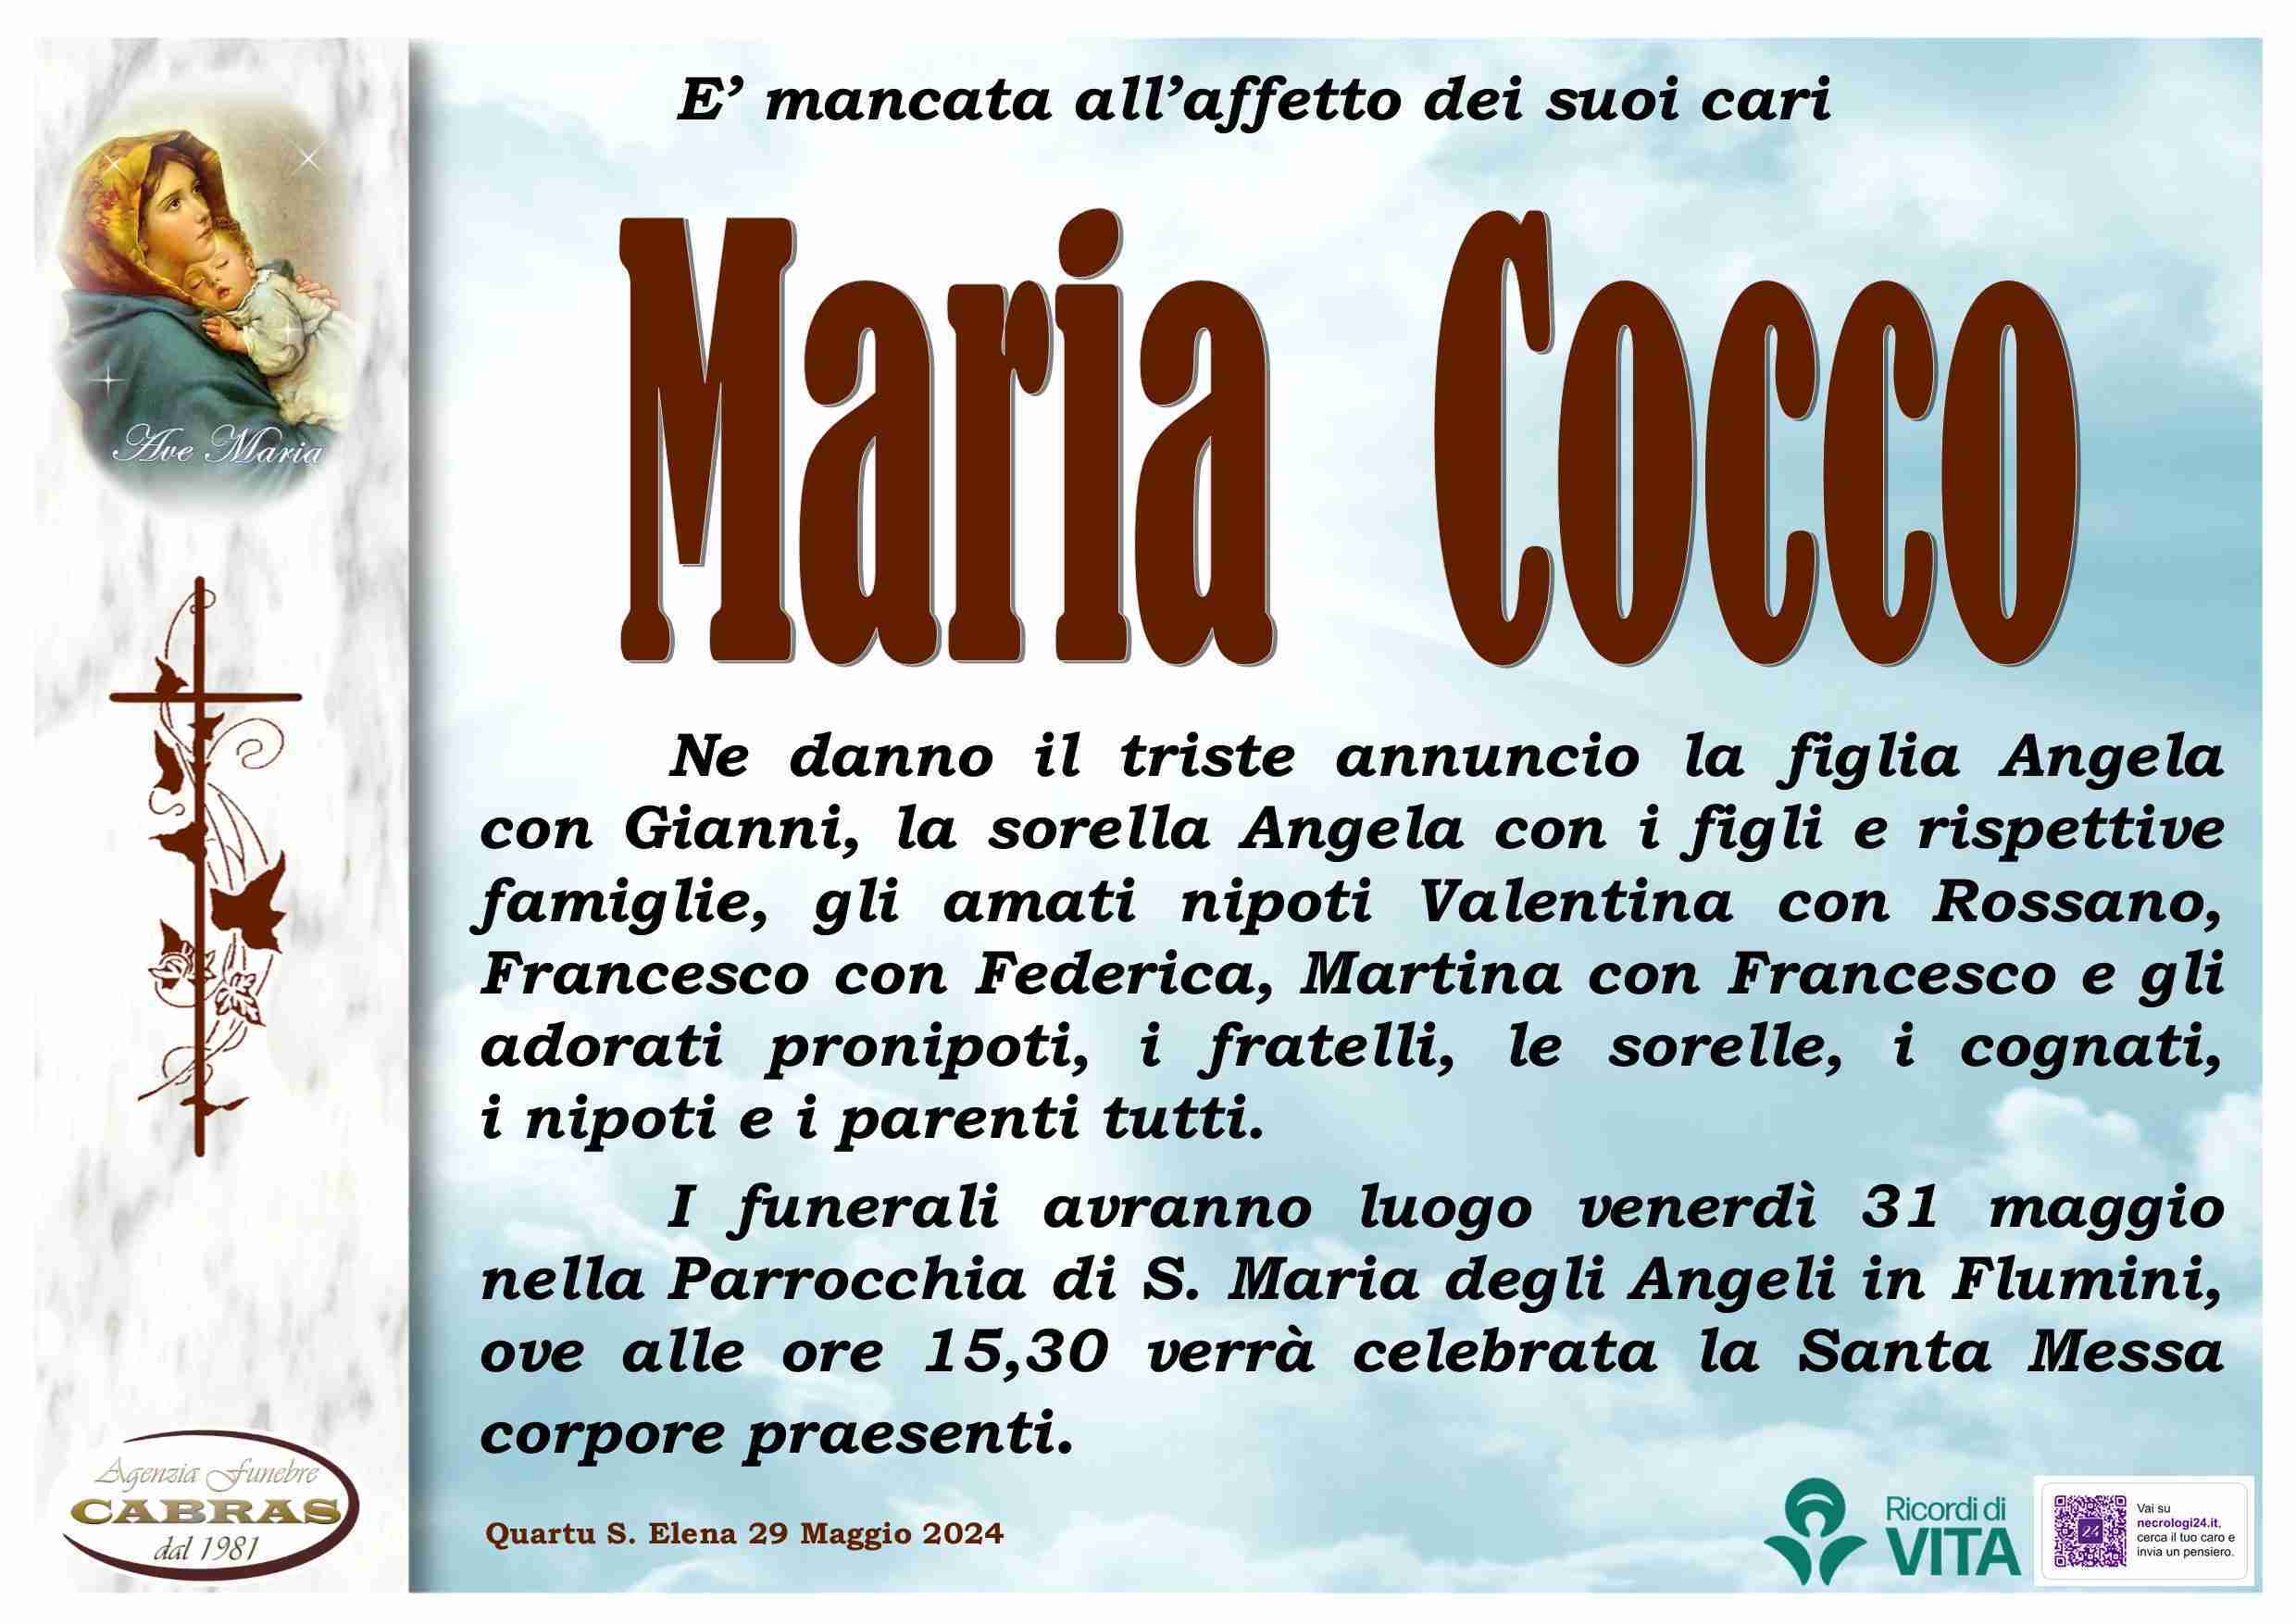 Maria Cocco